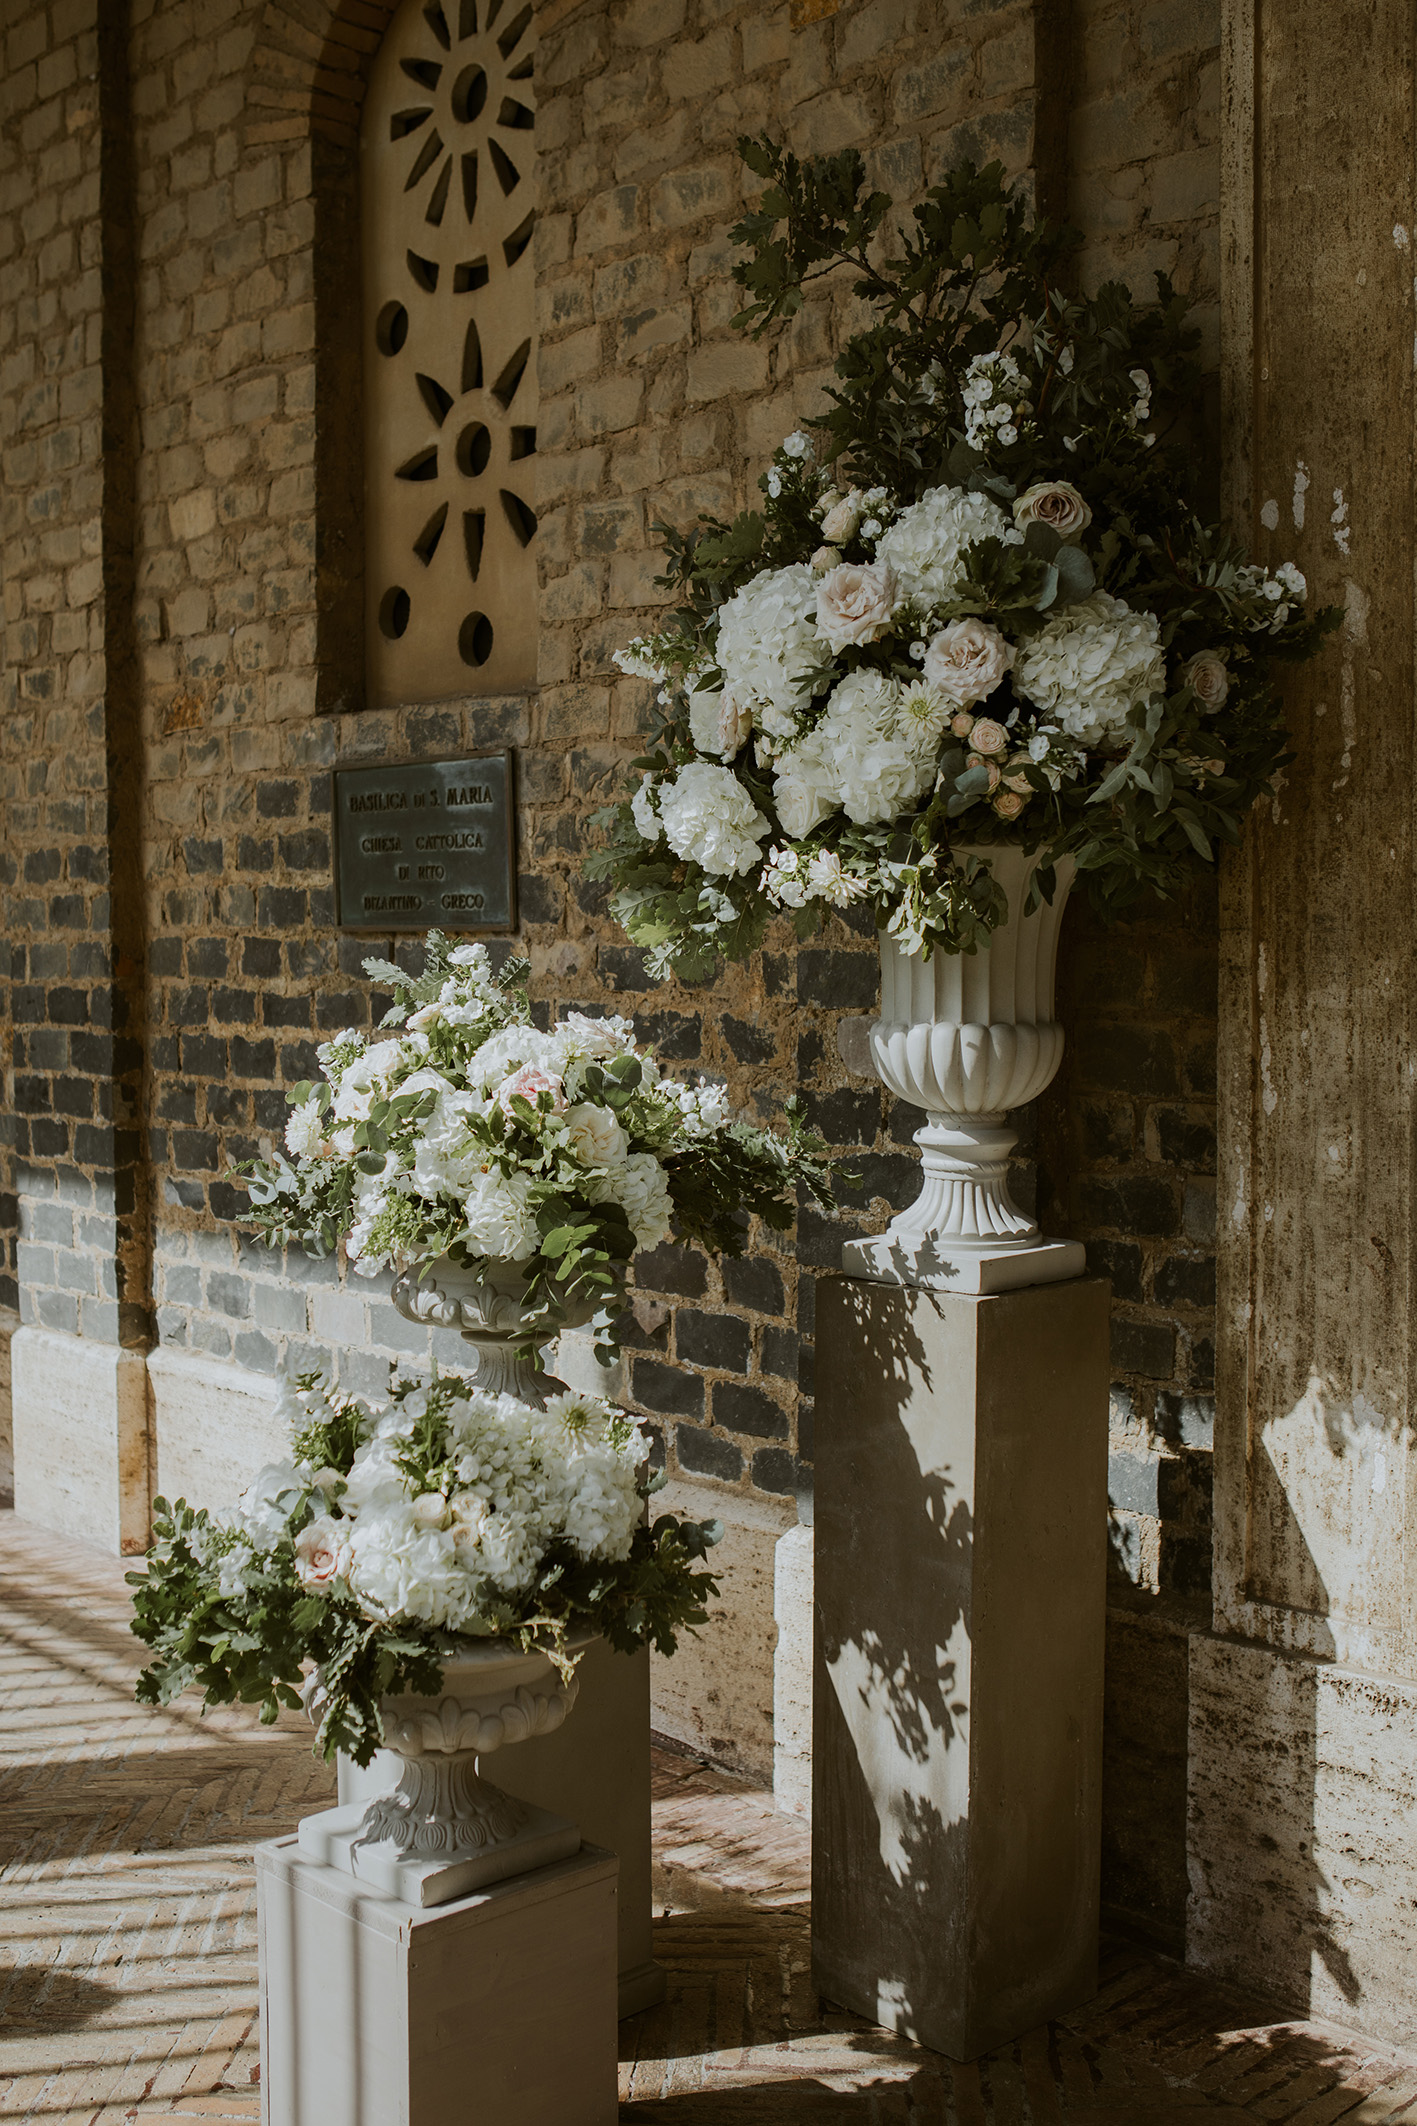 Addobbo floreale per ingresso chiesa matrimonio, con urne bianche e composizioni in stile botanico, verde di stagione e fiori bianchi